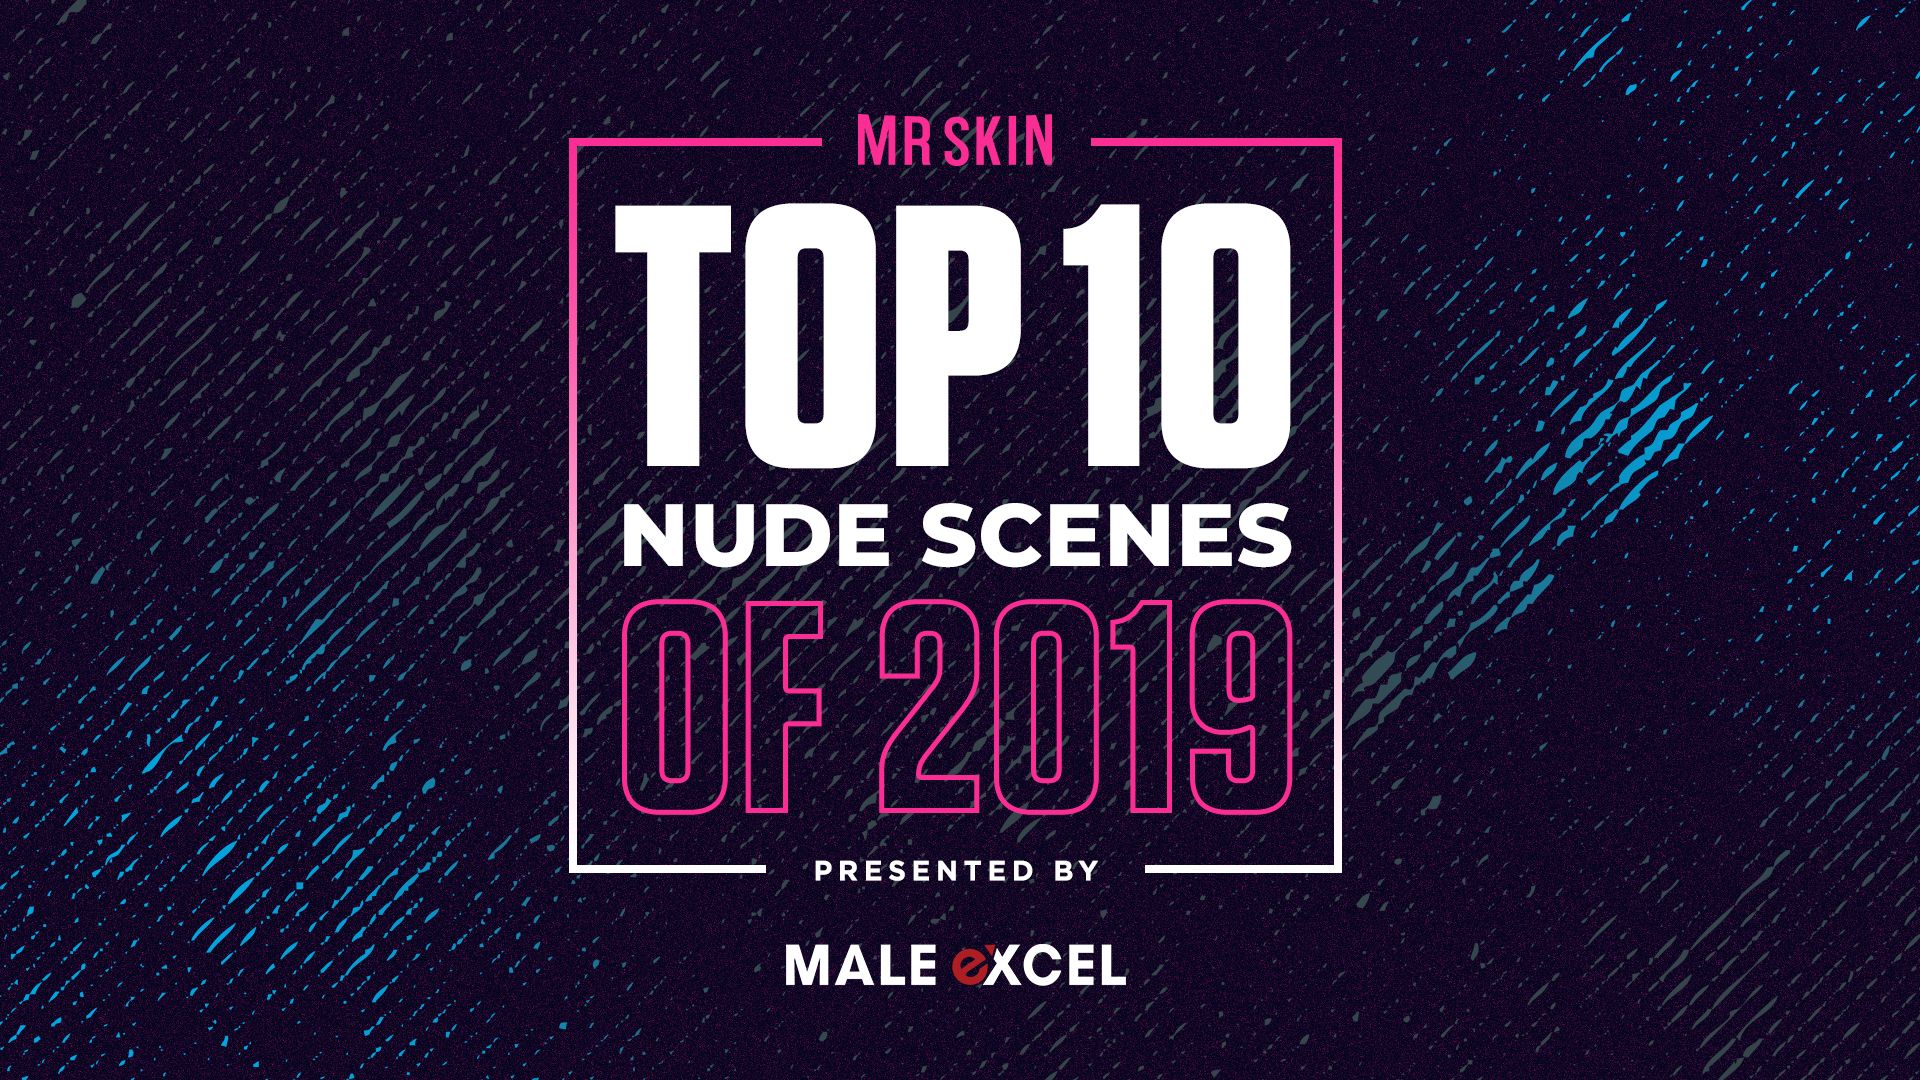  Mr. Skin's Top 10 Nude Scenes of 2019